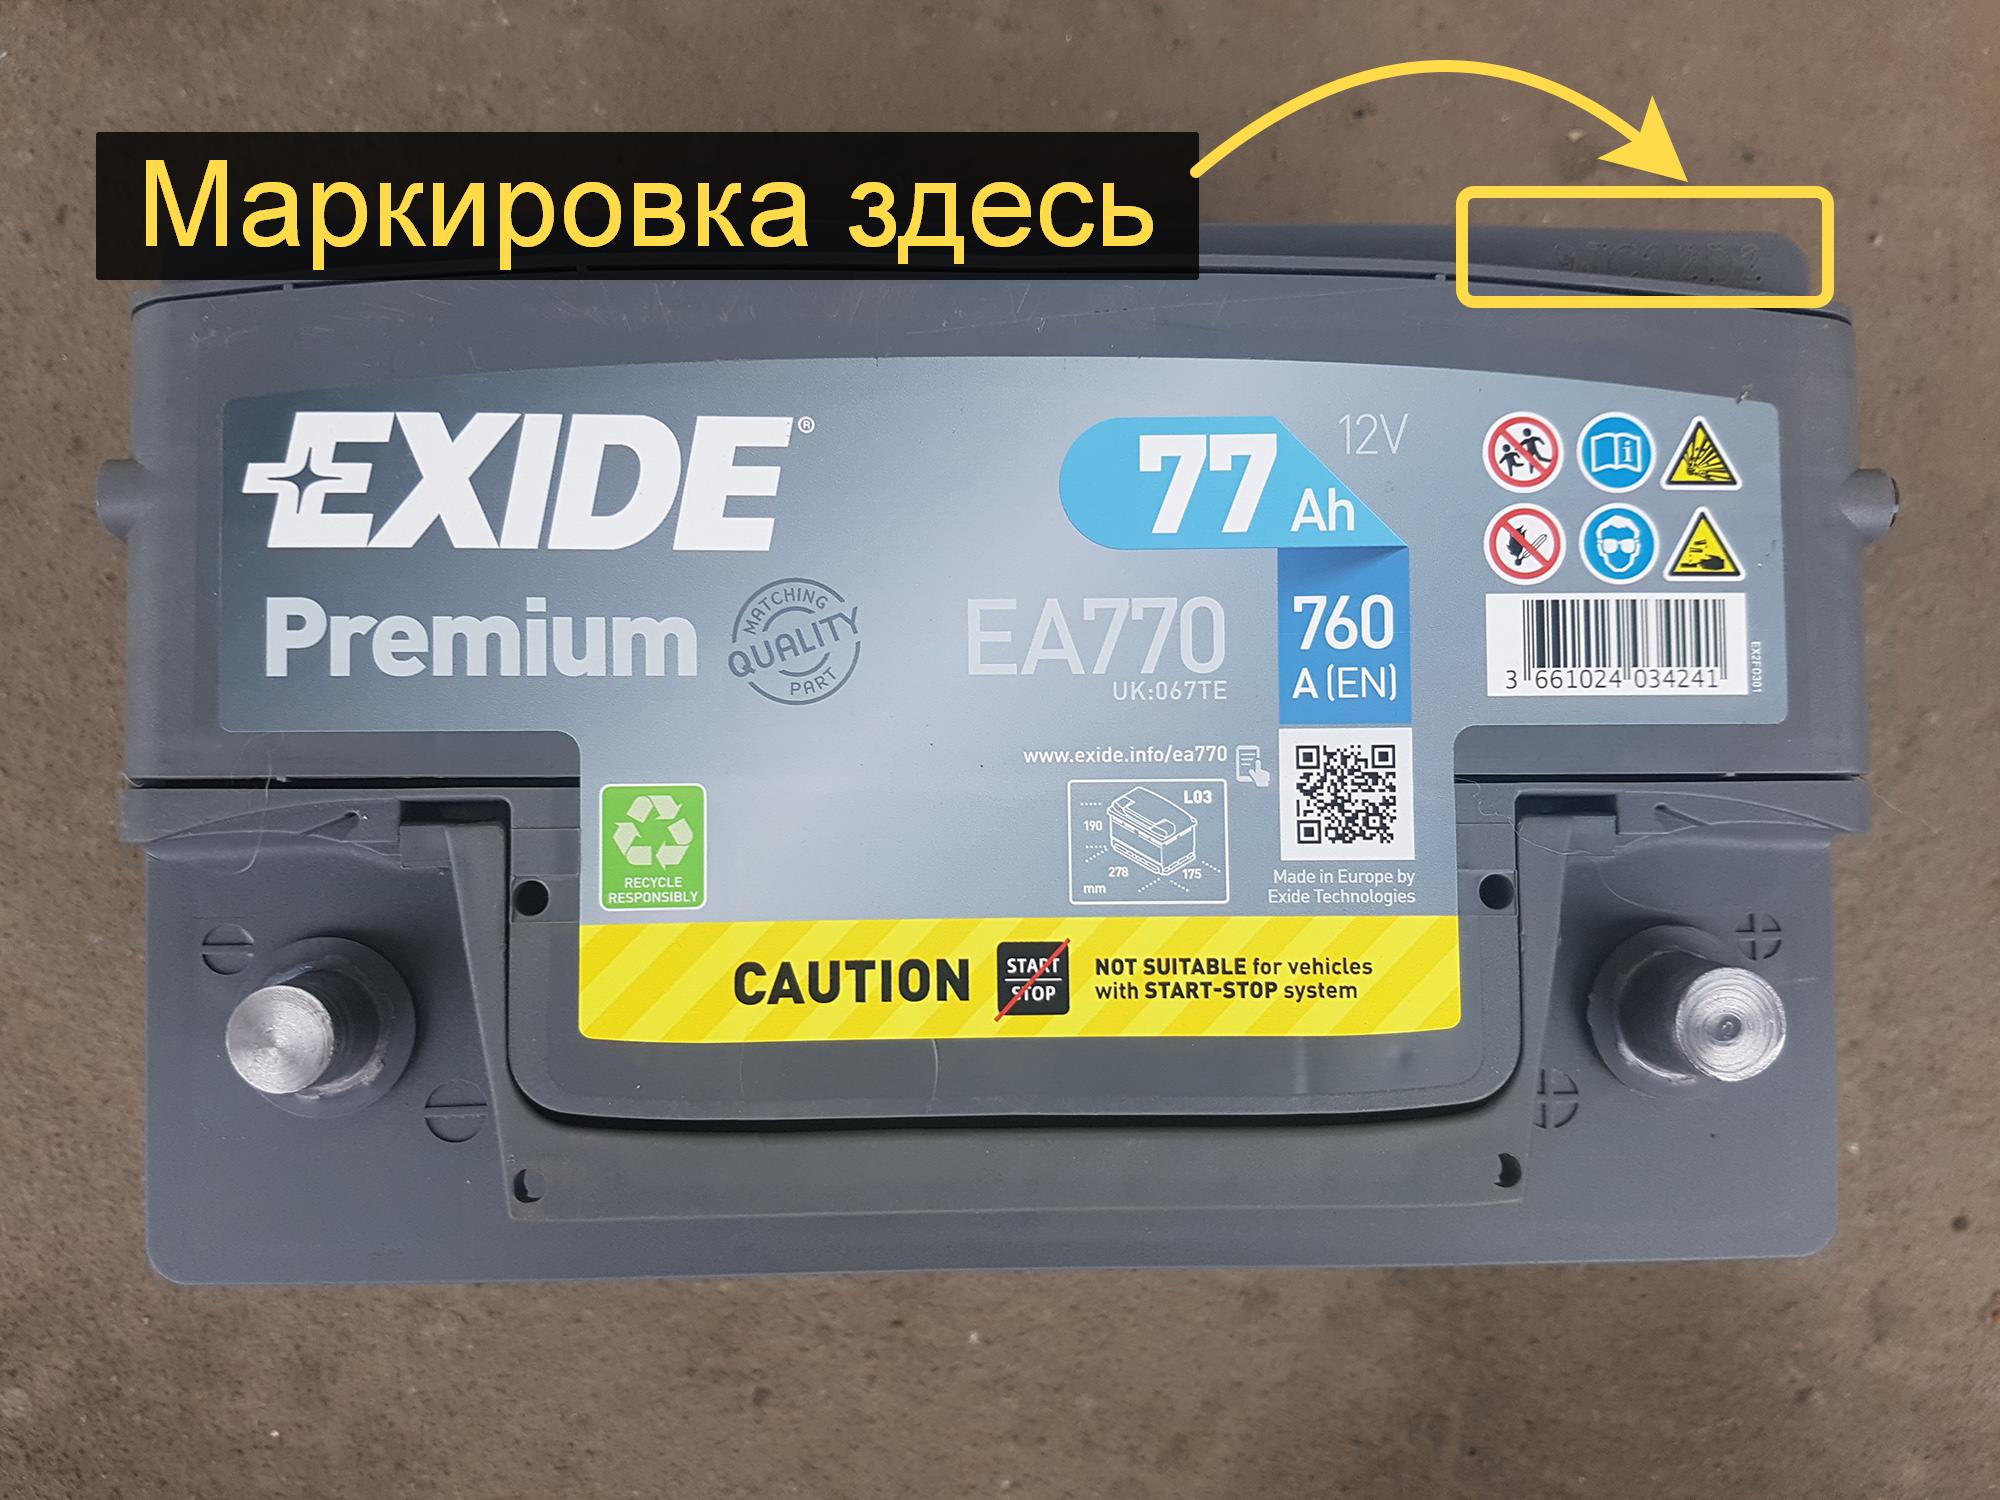 Как узнать дату выпуска аккумулятора Exide – АКБ77